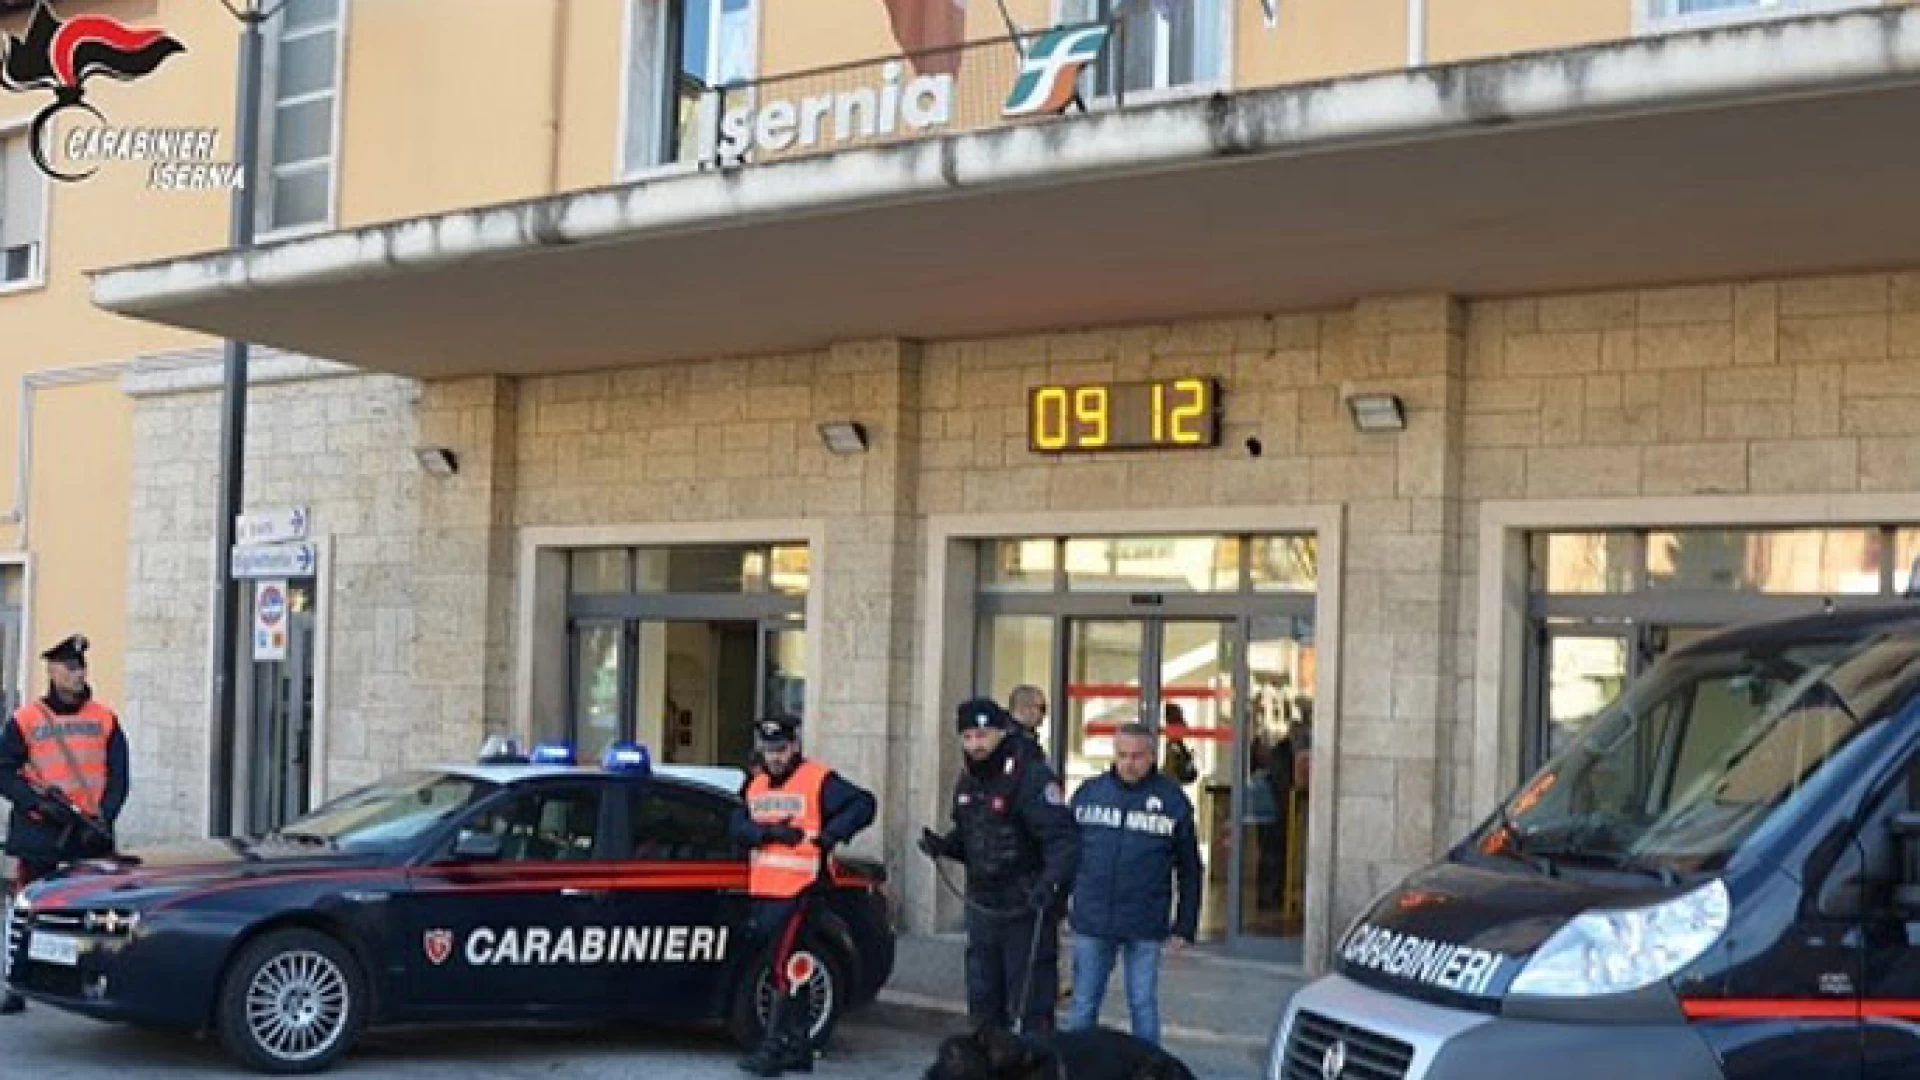 Nuova operazione antidroga dei Carabinieri, tre persone denunciate, sotto sequestro varie dosi di stupefacenti. Un 30 di Fornelli alla guida sotto effetto di stupefacenti.